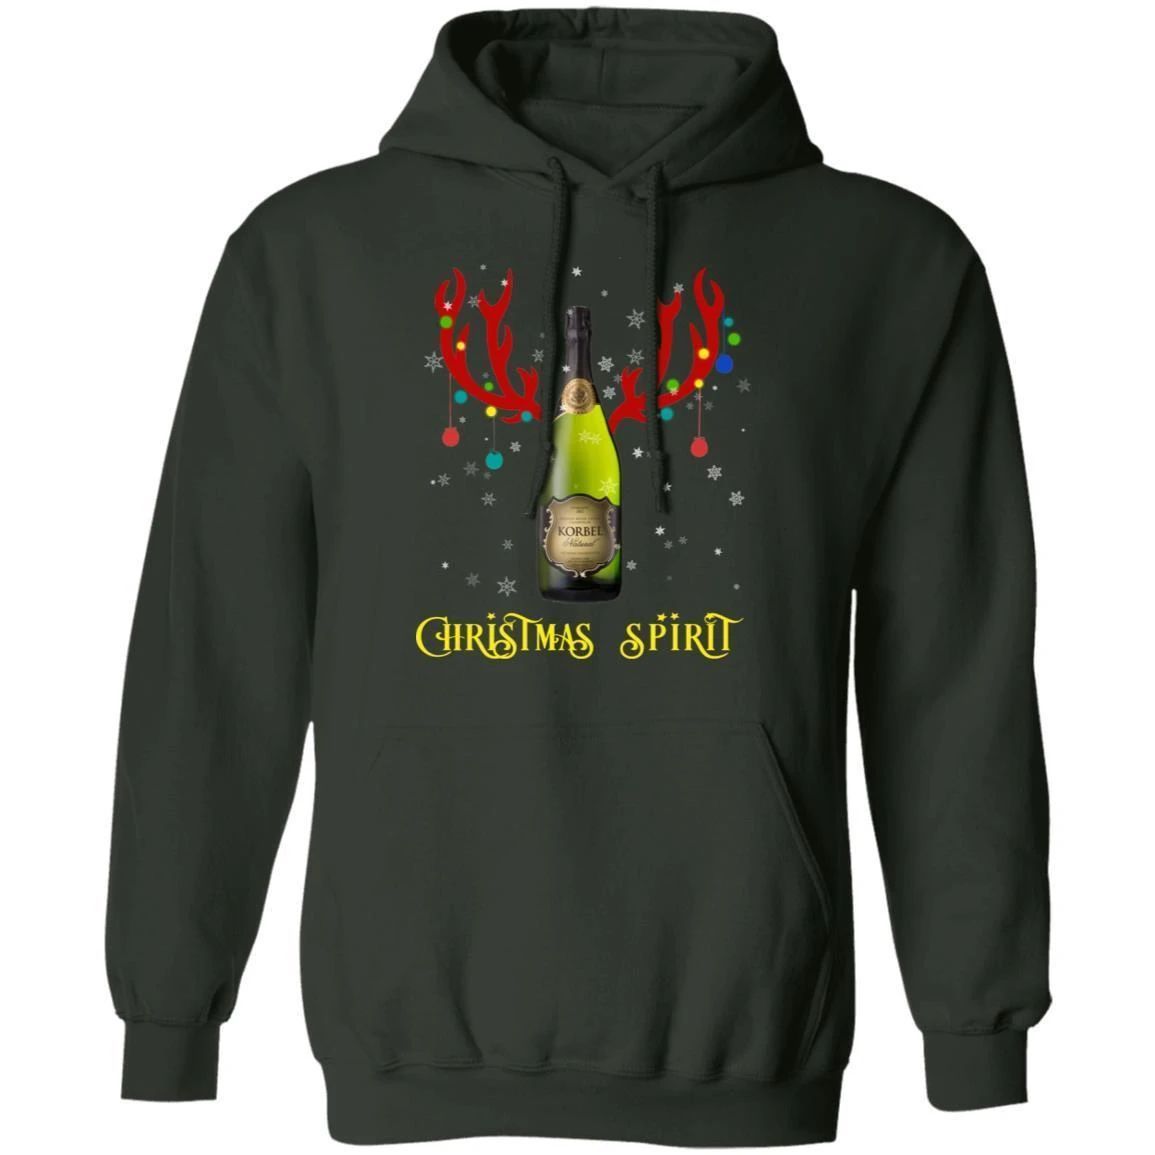 Korbel Reindeer Christmas Spirit Brandy Hoodie Funny Xmas Gift Ha11 Forest Green / S Sweatshirts